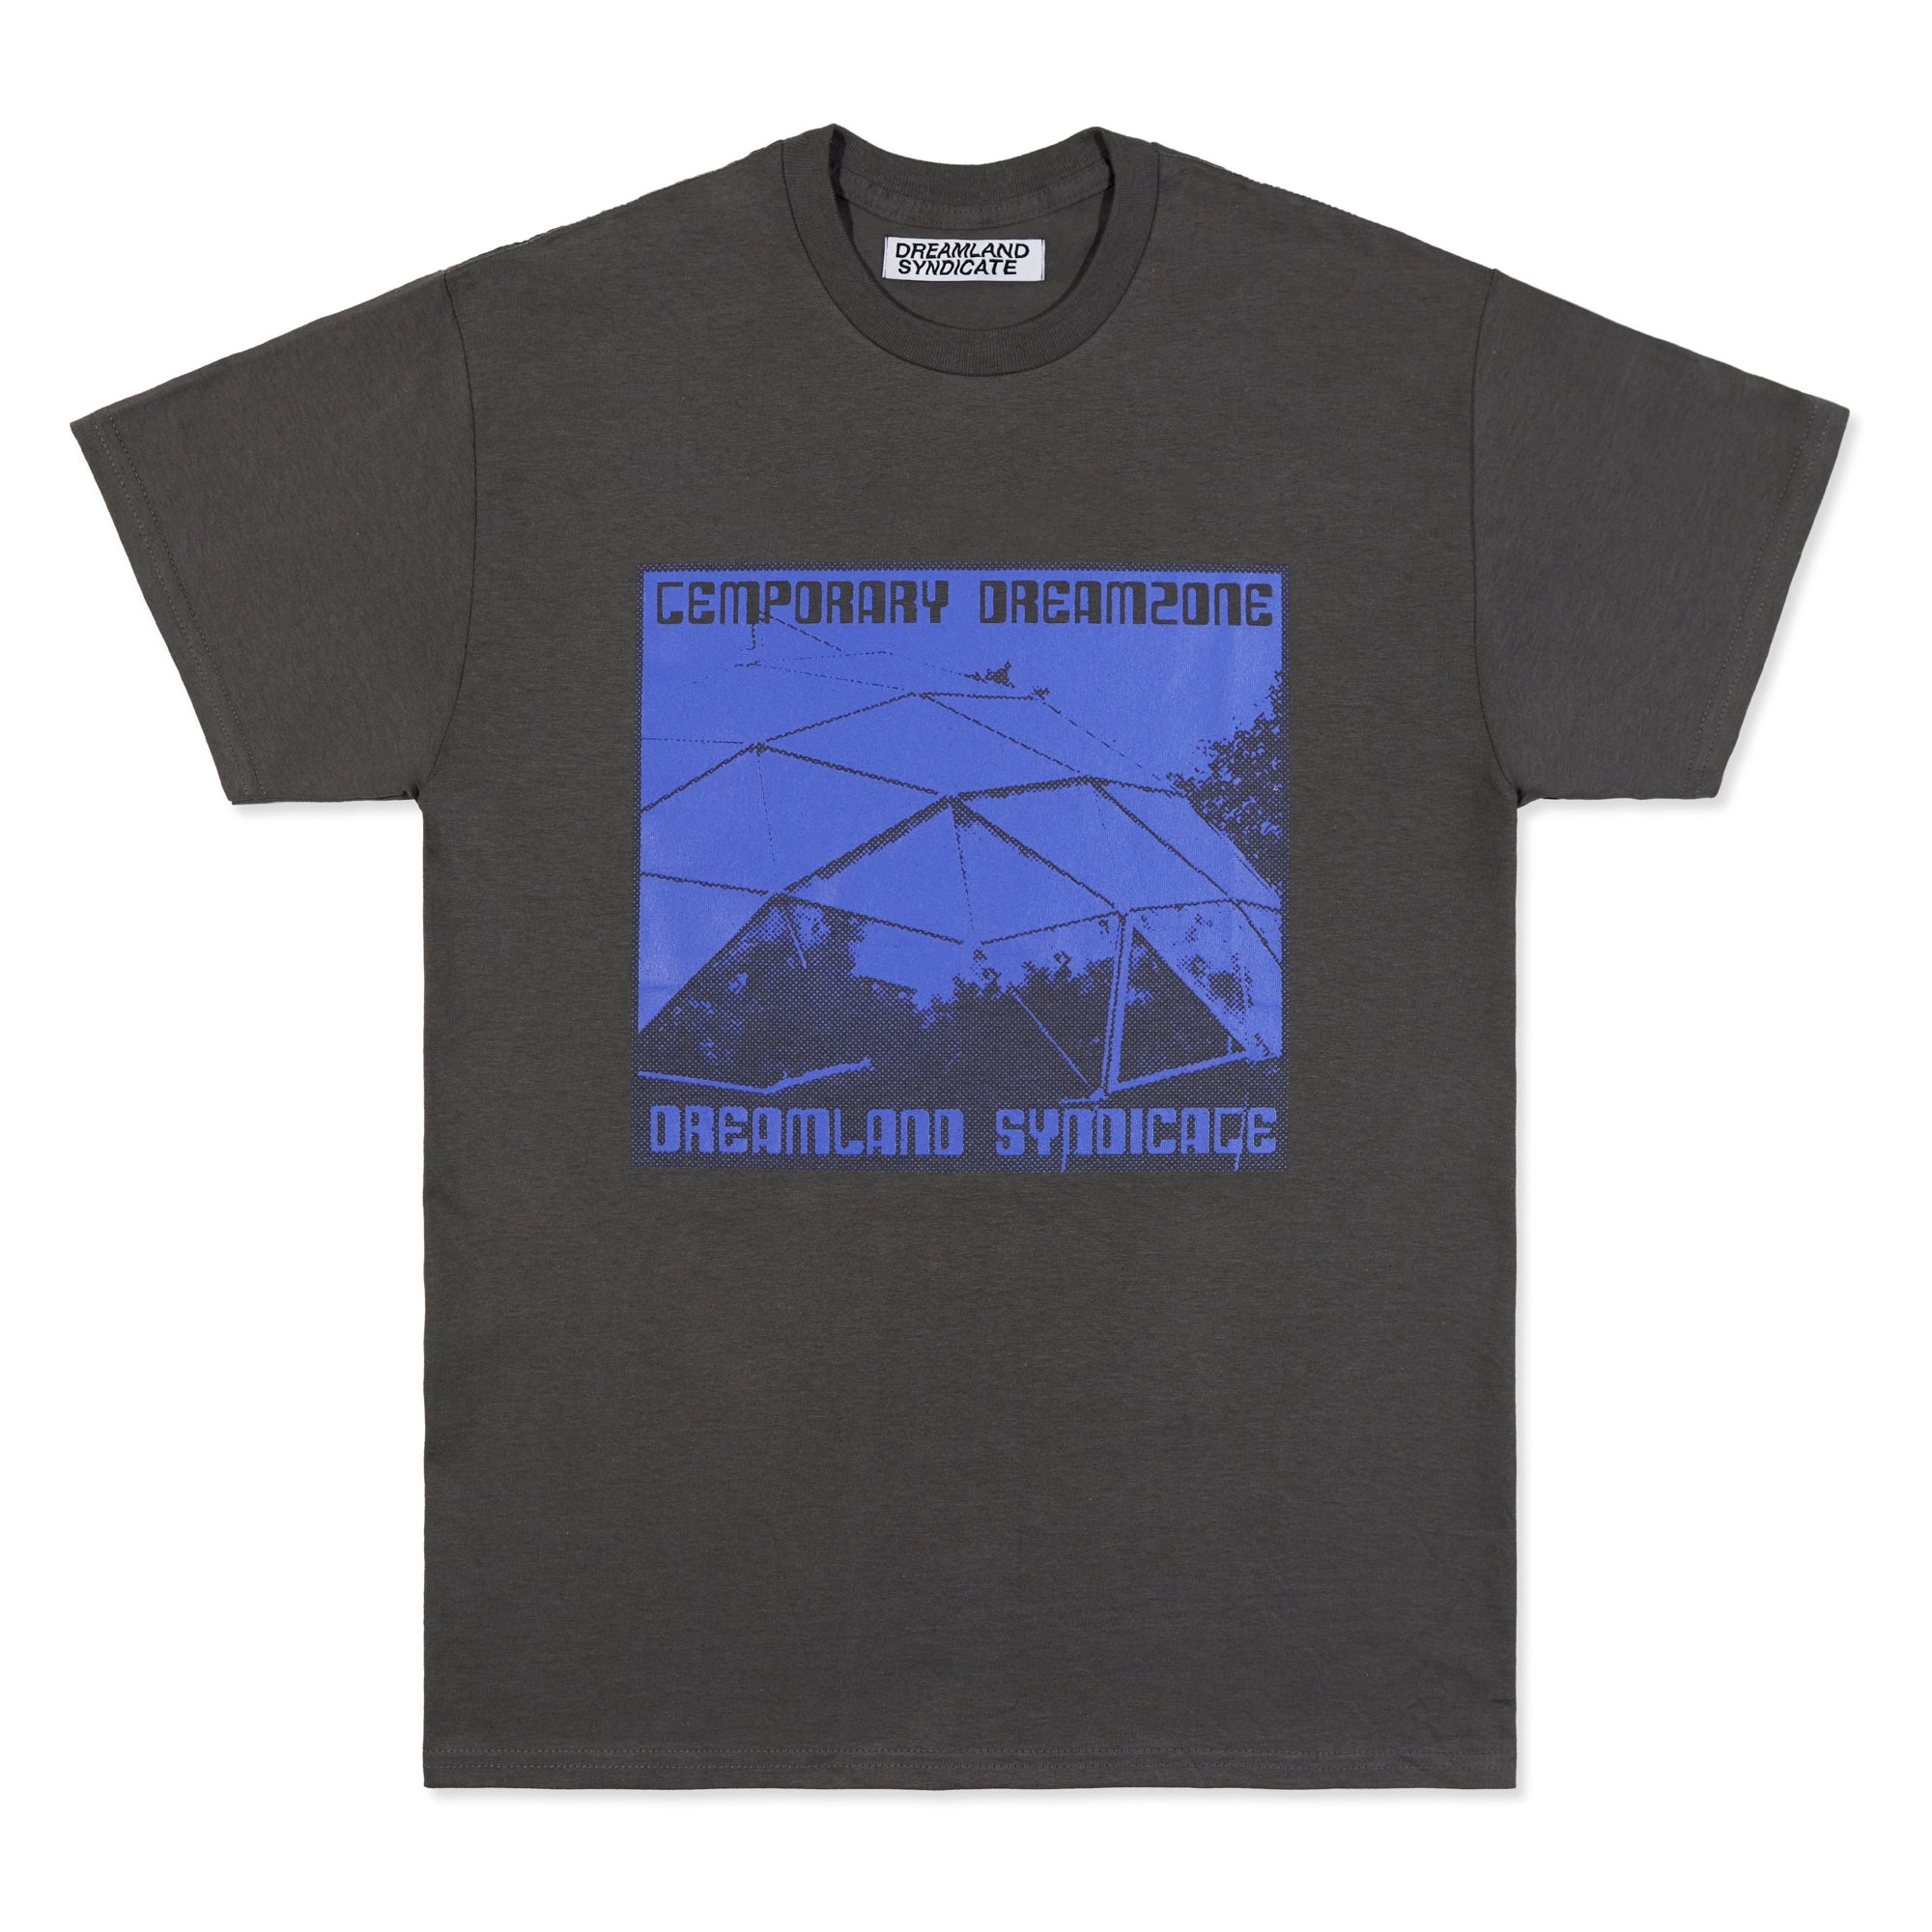 Temporary Dreamzone T-Shirt